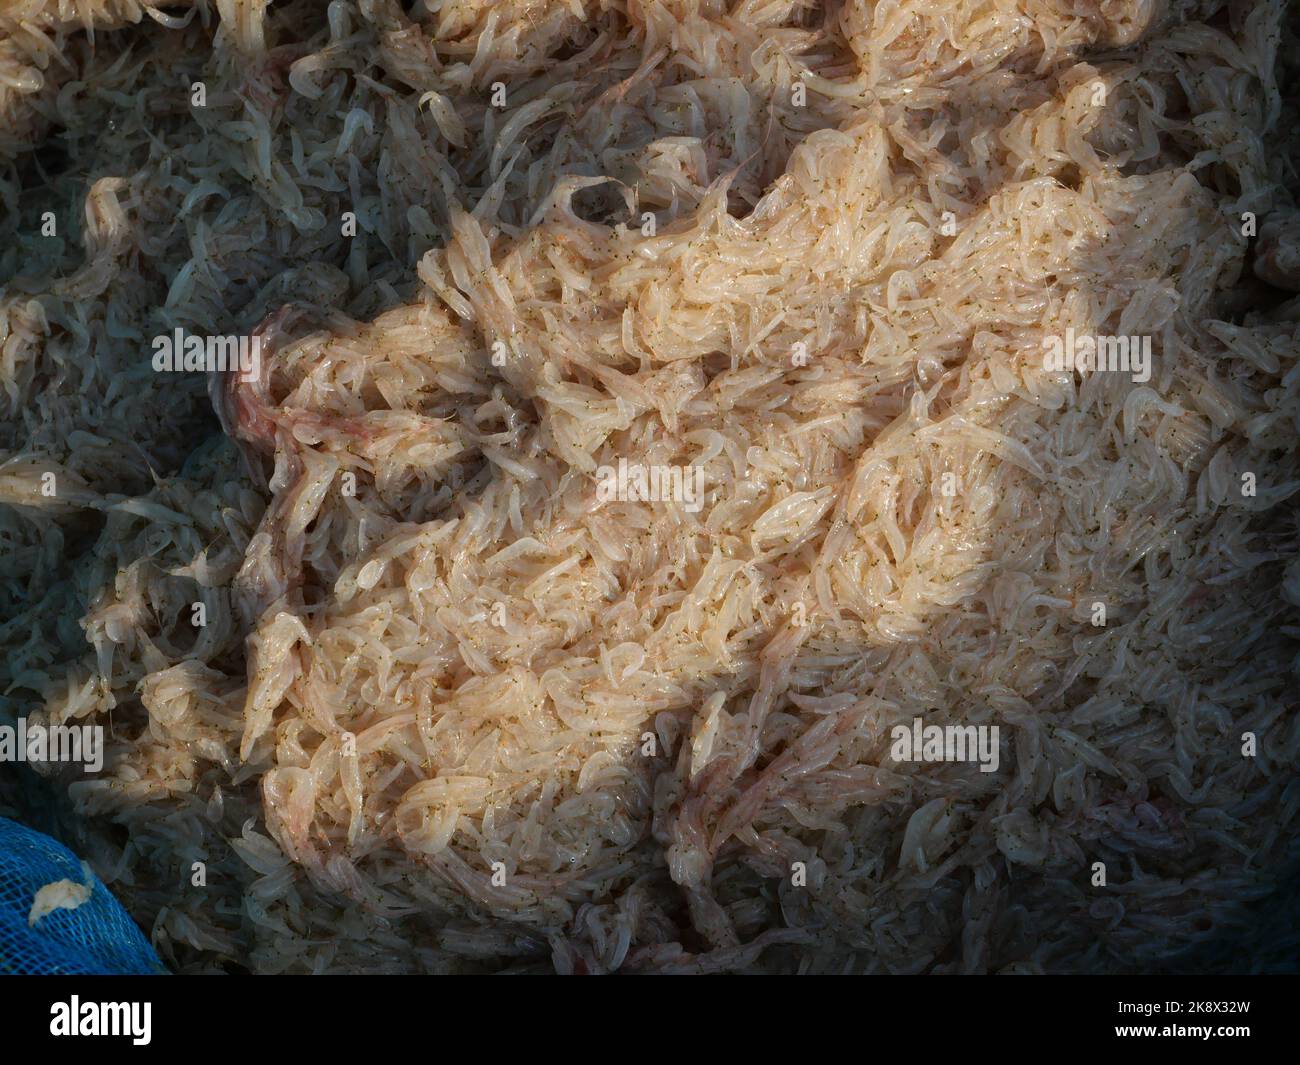 Groupe de crevettes fraîches de krill ou d'opossum, plancton que les pêcheurs piégent pour cuisiner Banque D'Images